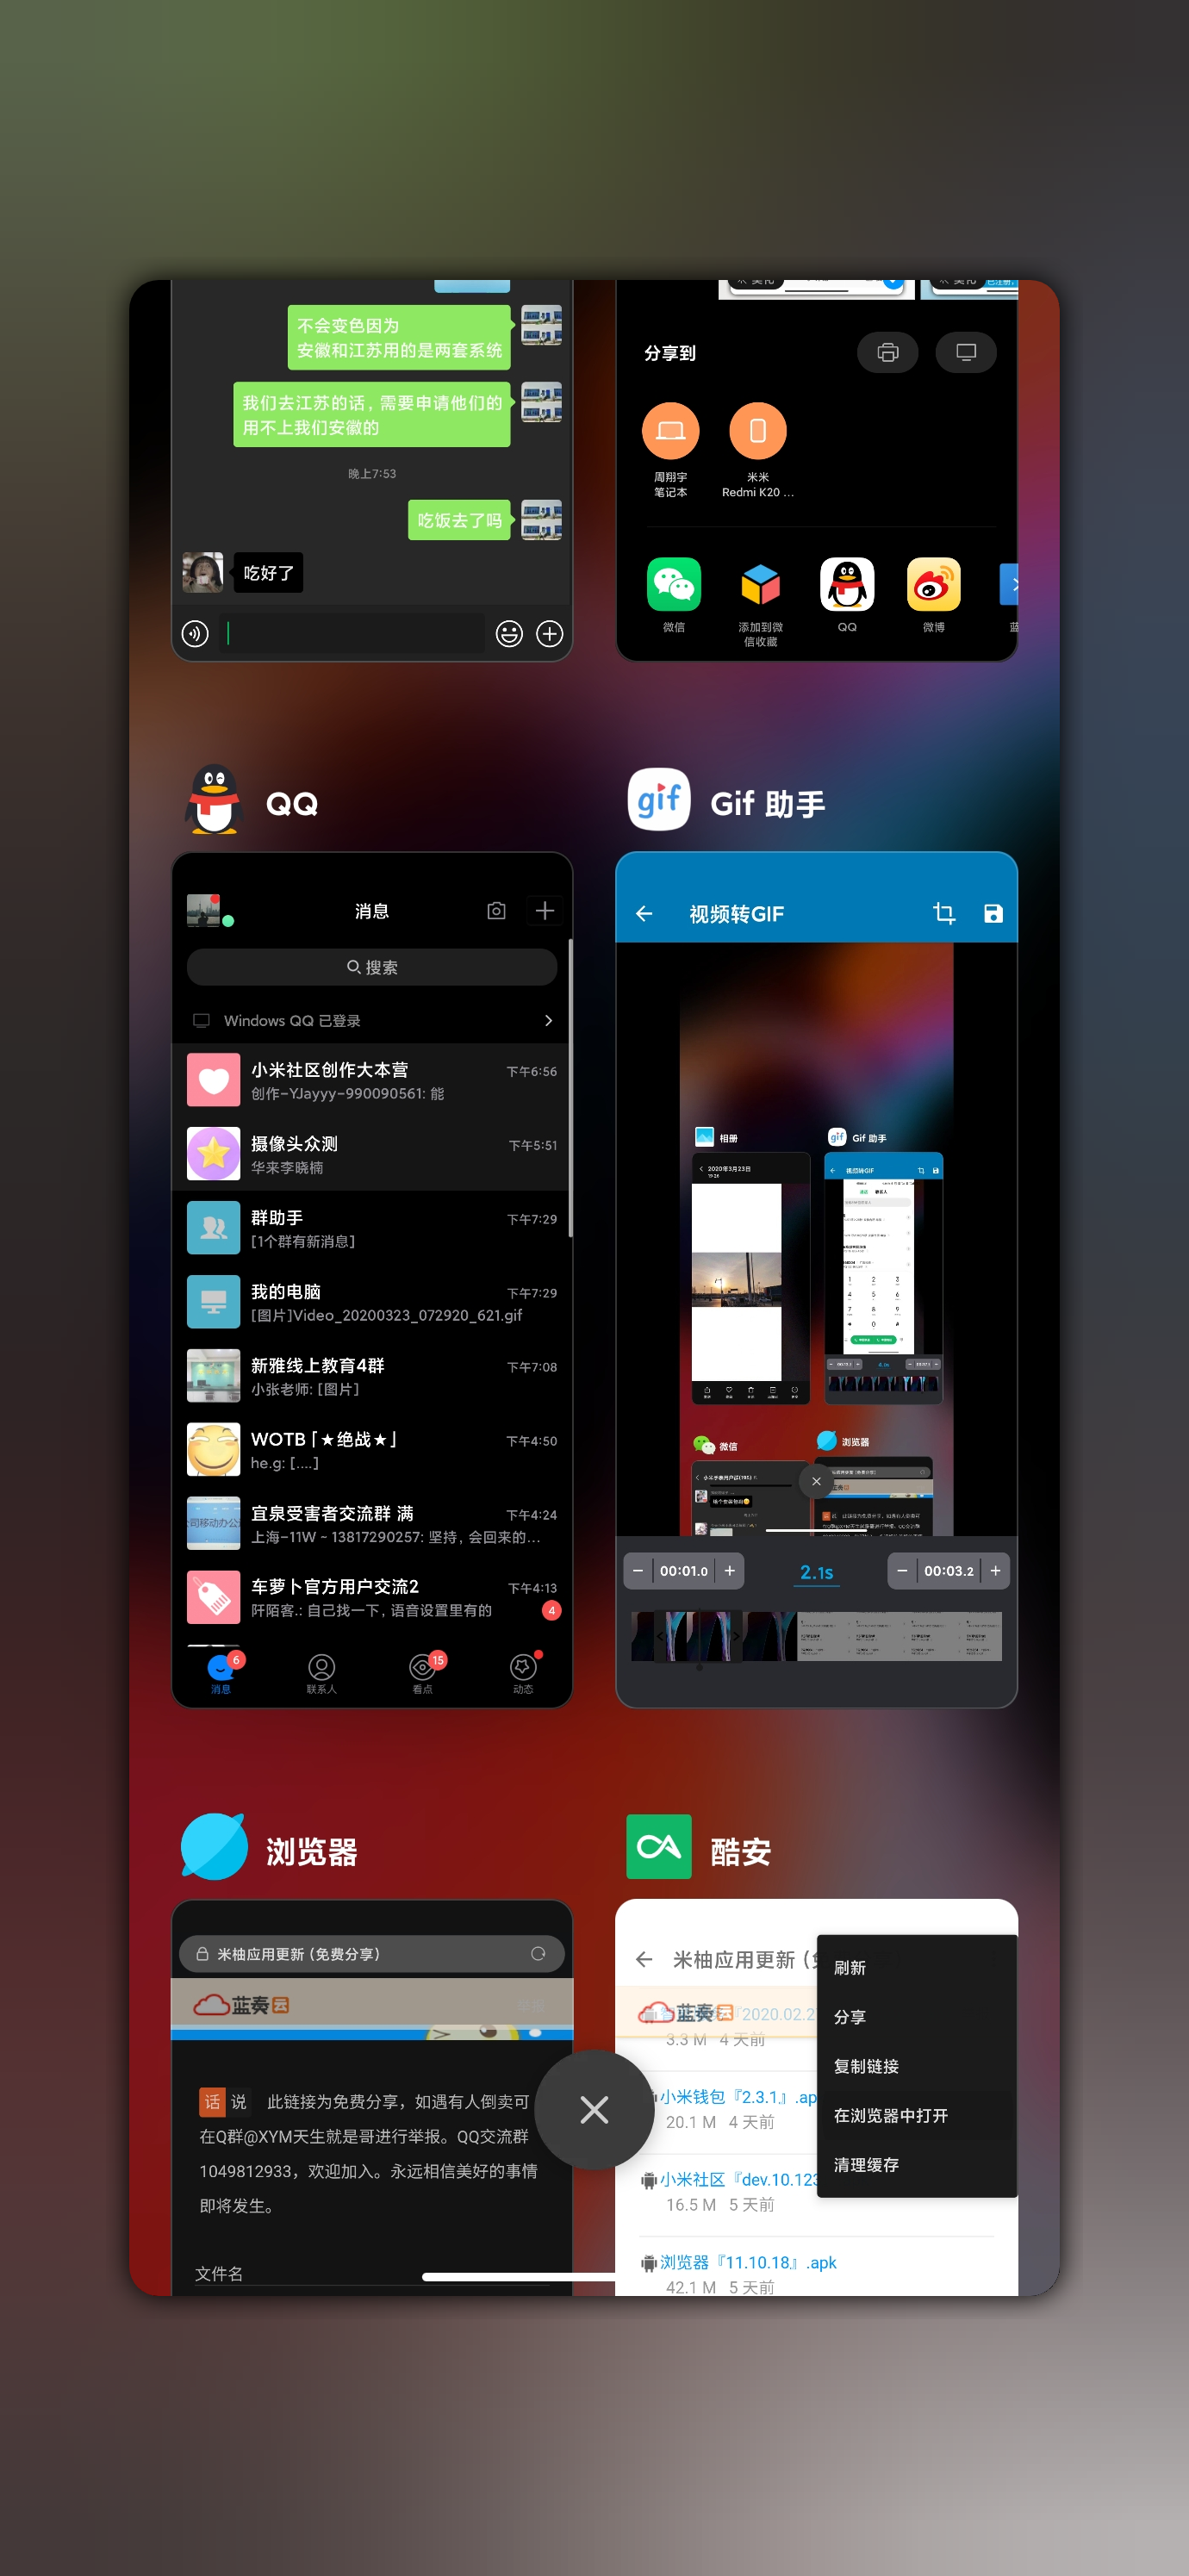 Les prochaines fonctionnalités MIUI 12 de Xiaomi sont attendues 3